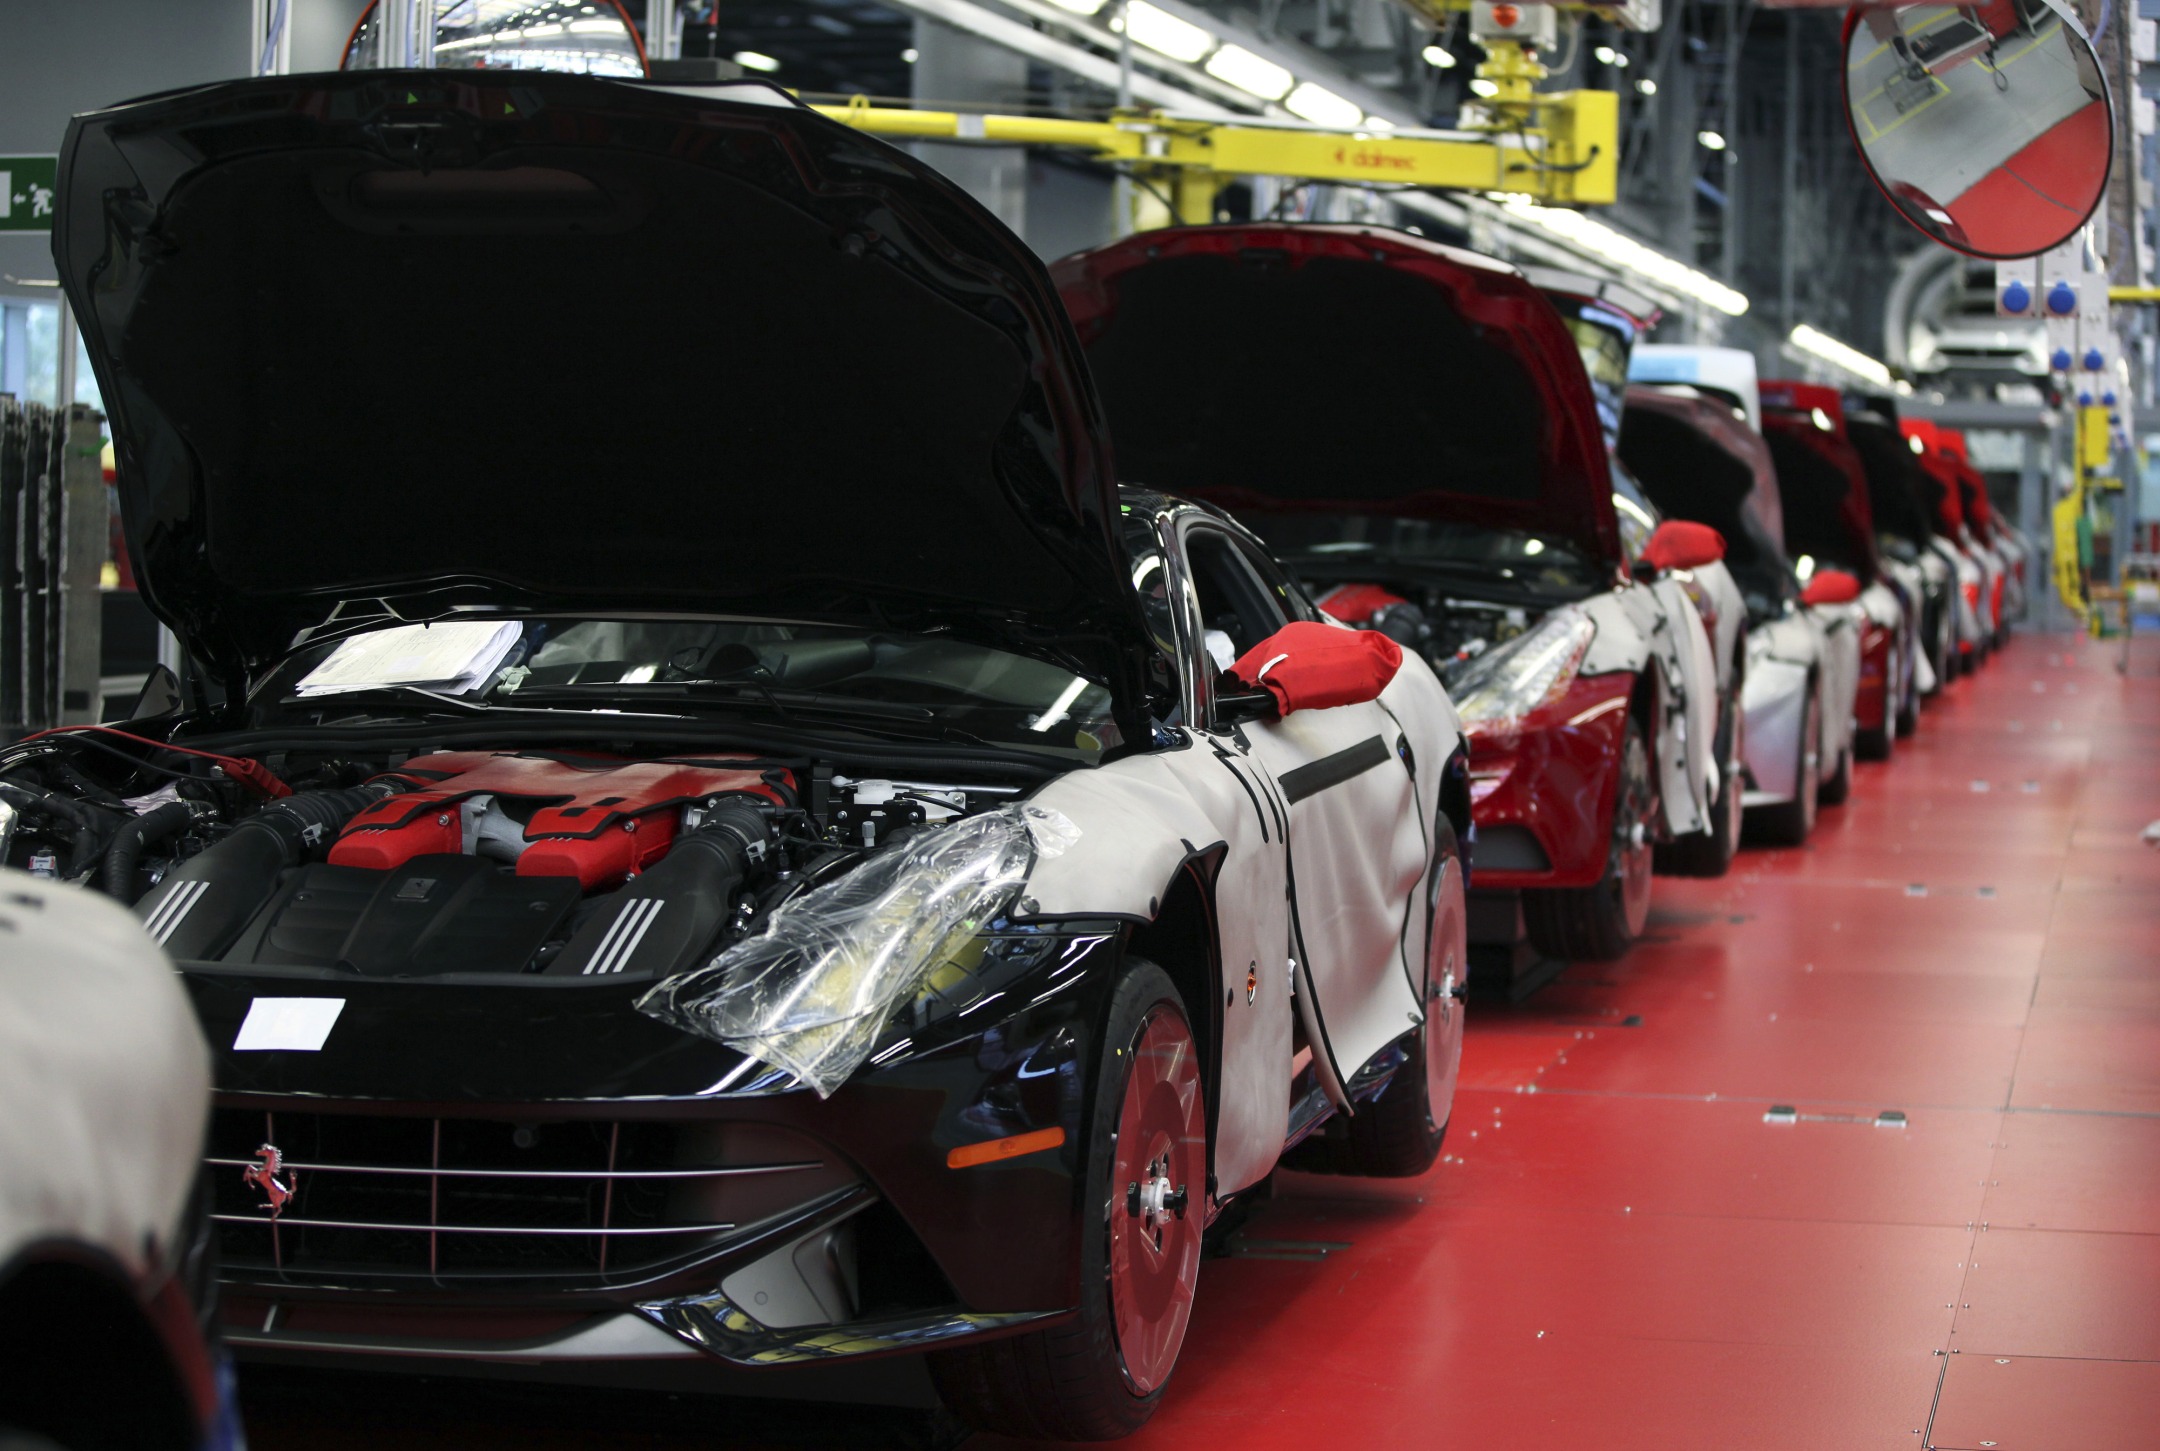 Ferrari automobiles under production at a plant in Maranello, Italy.